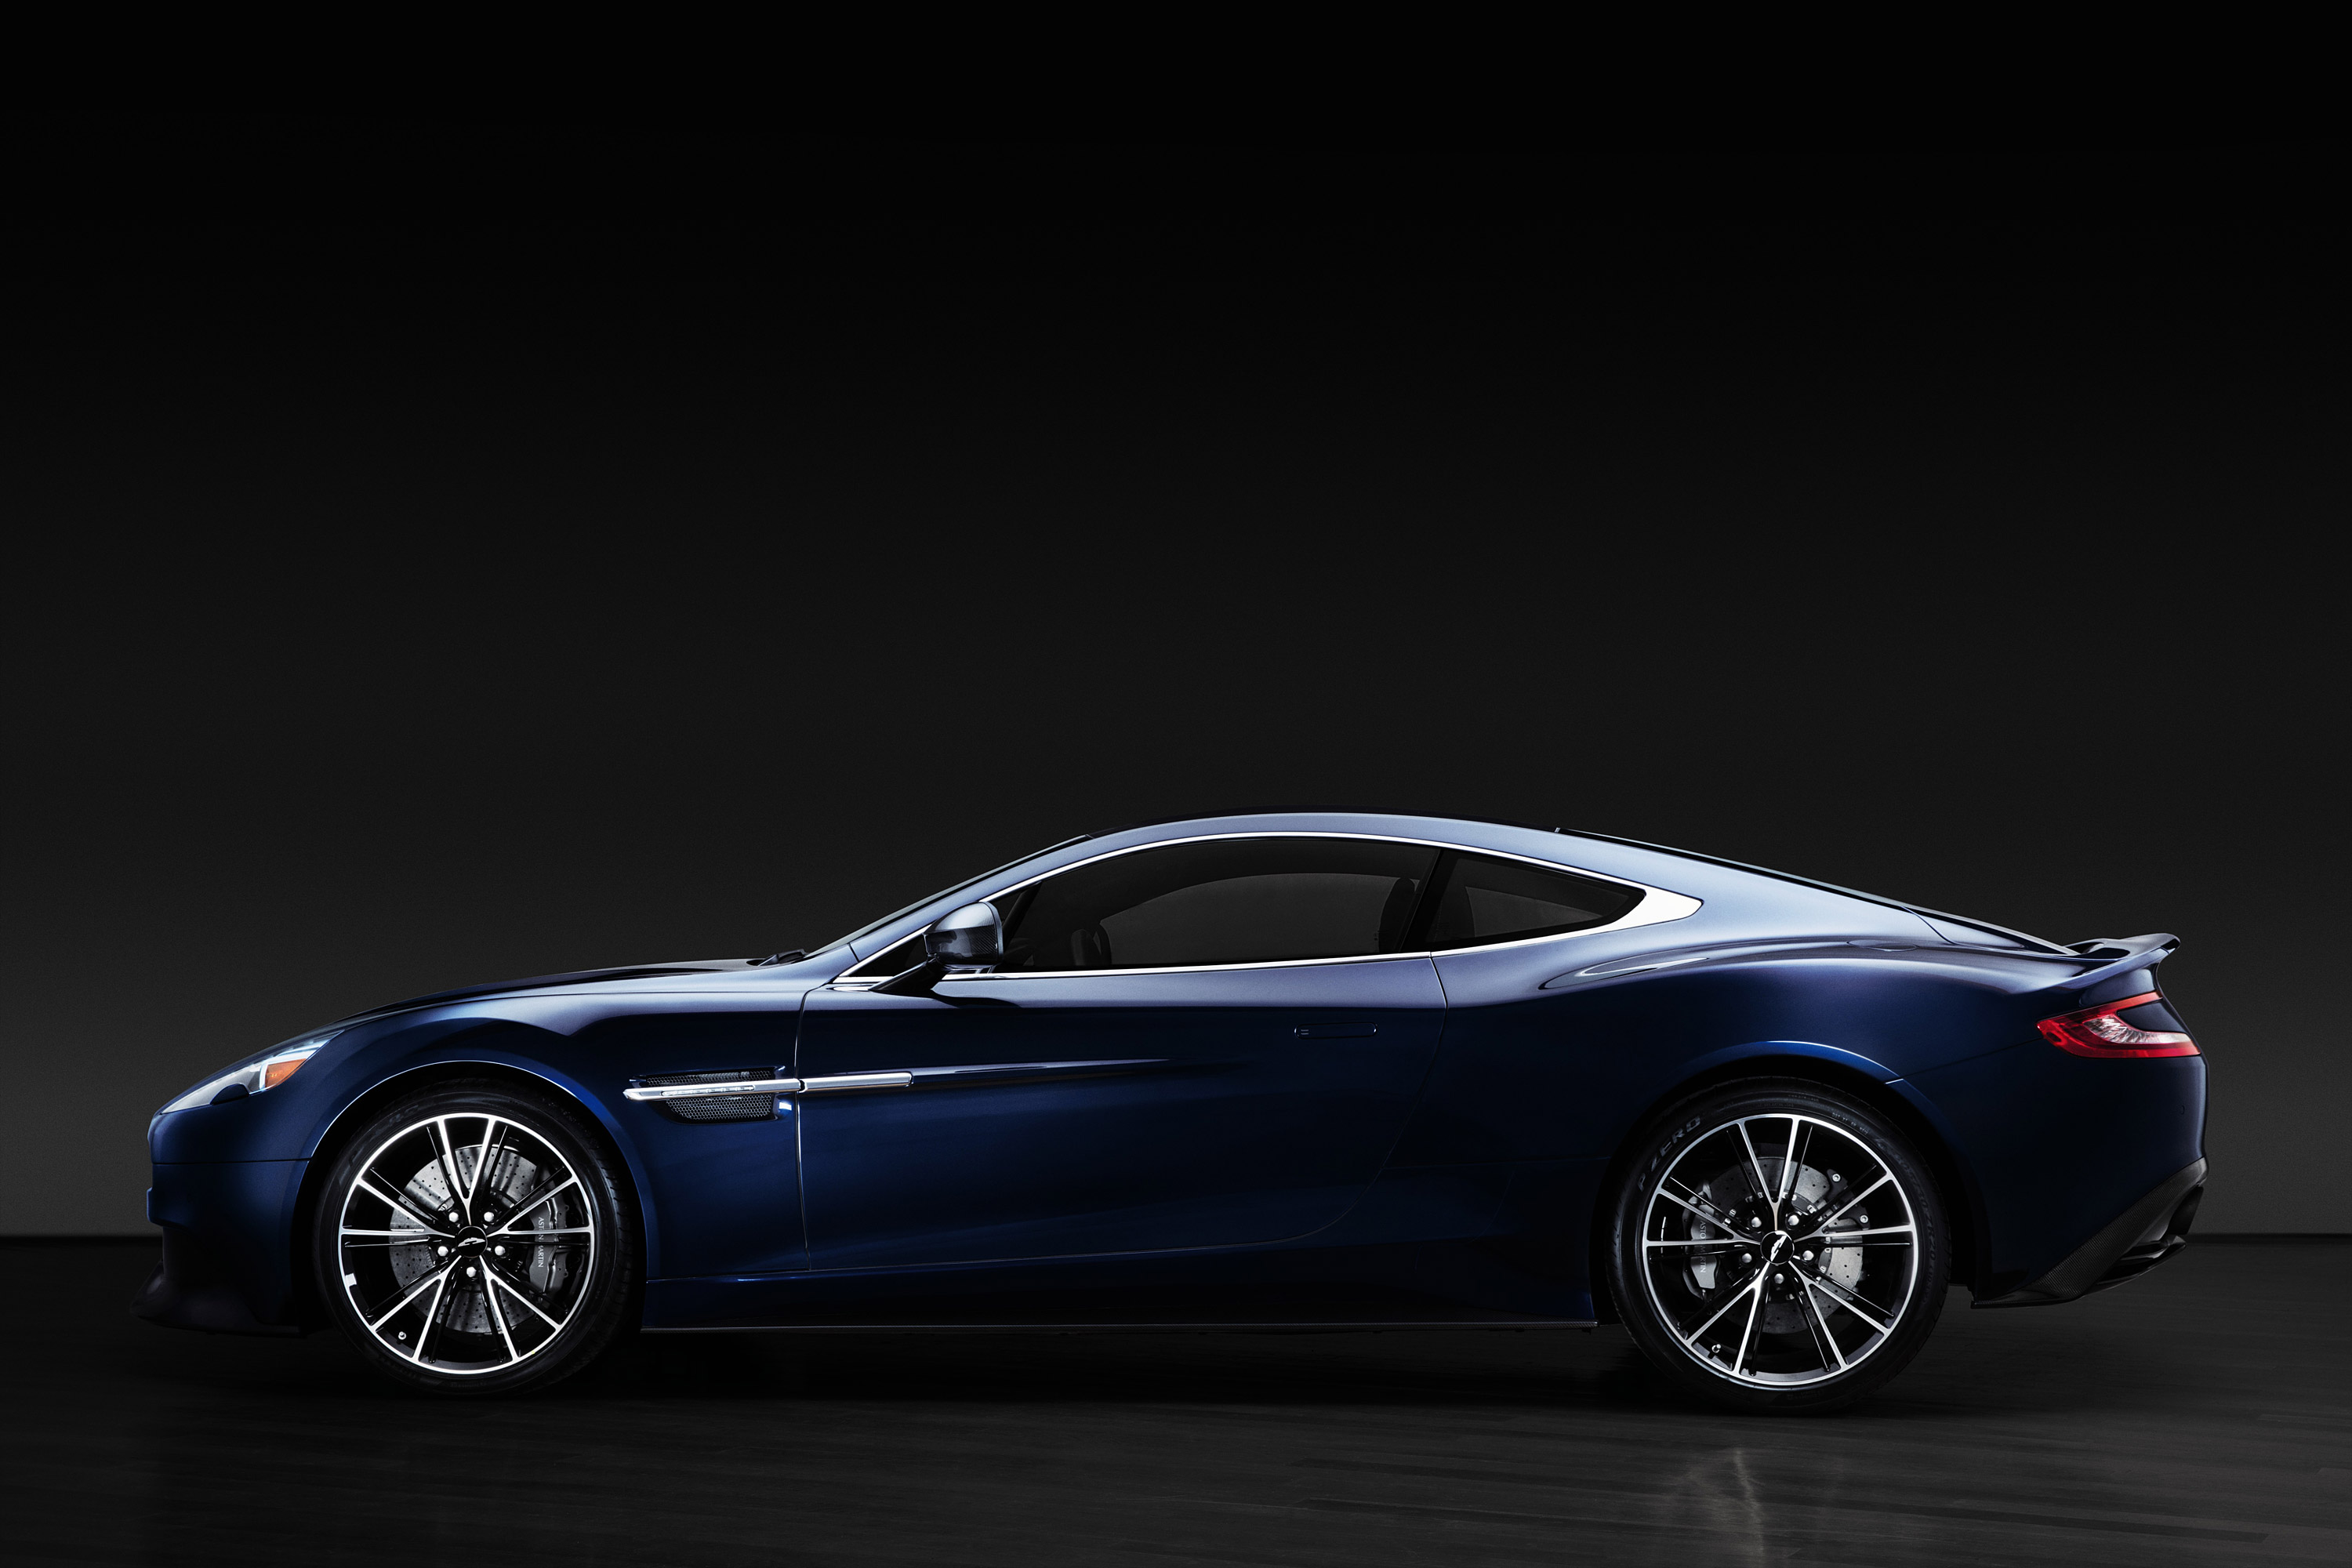  2013 Aston Martin Vanquish Centenary Edition= Wallpaper.